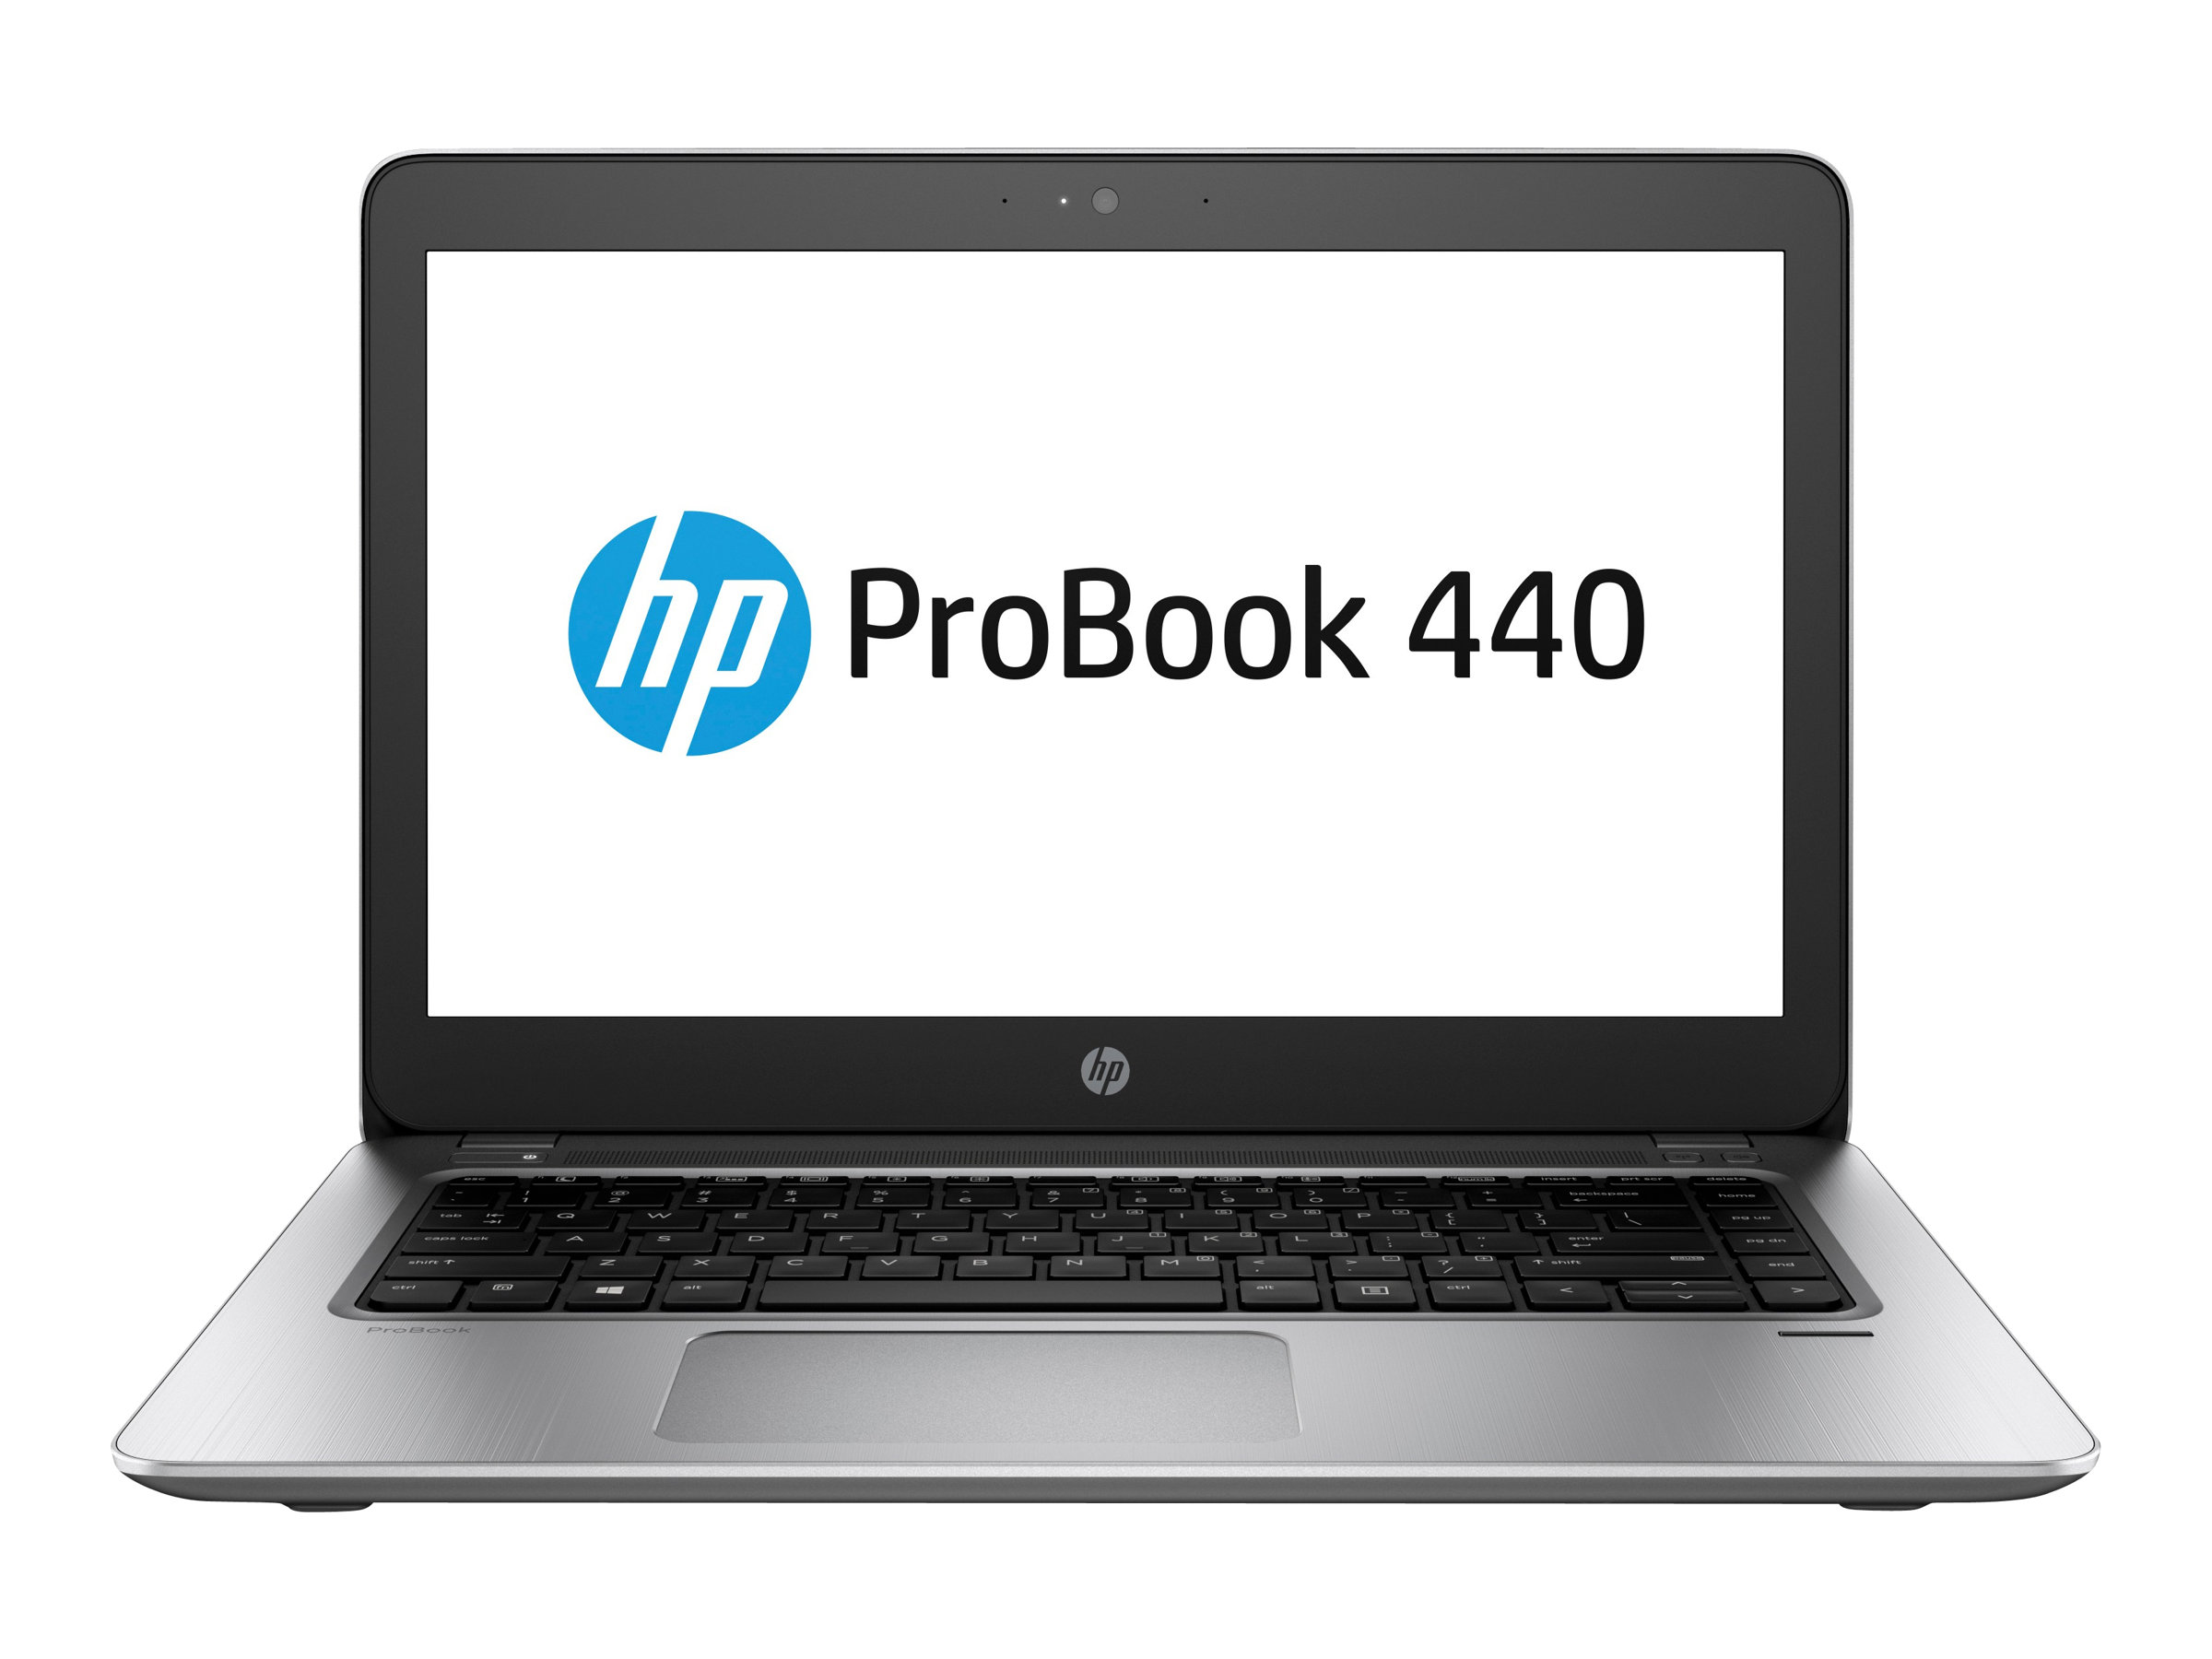 HP ProBook 440 G4 Notebook